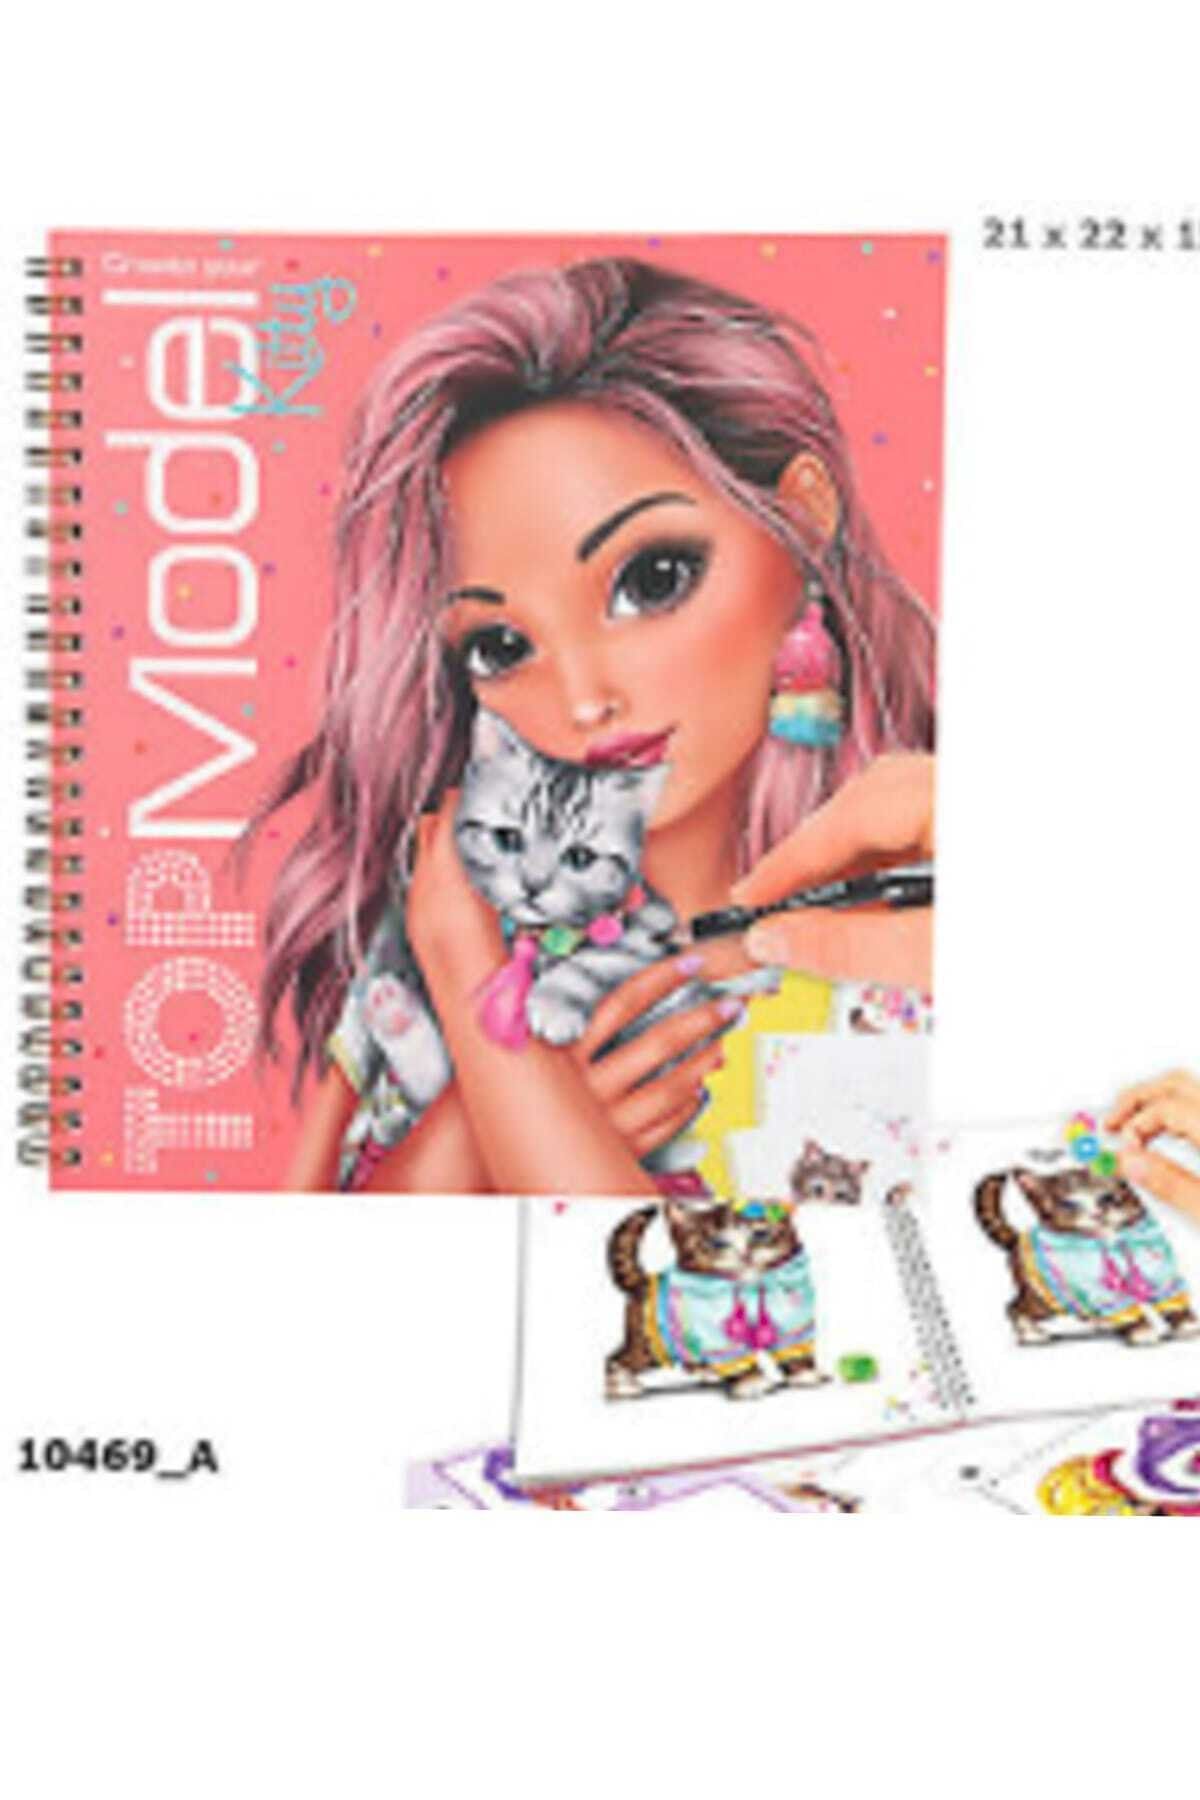 Top Model Kitty Boyama Kitabı 10469